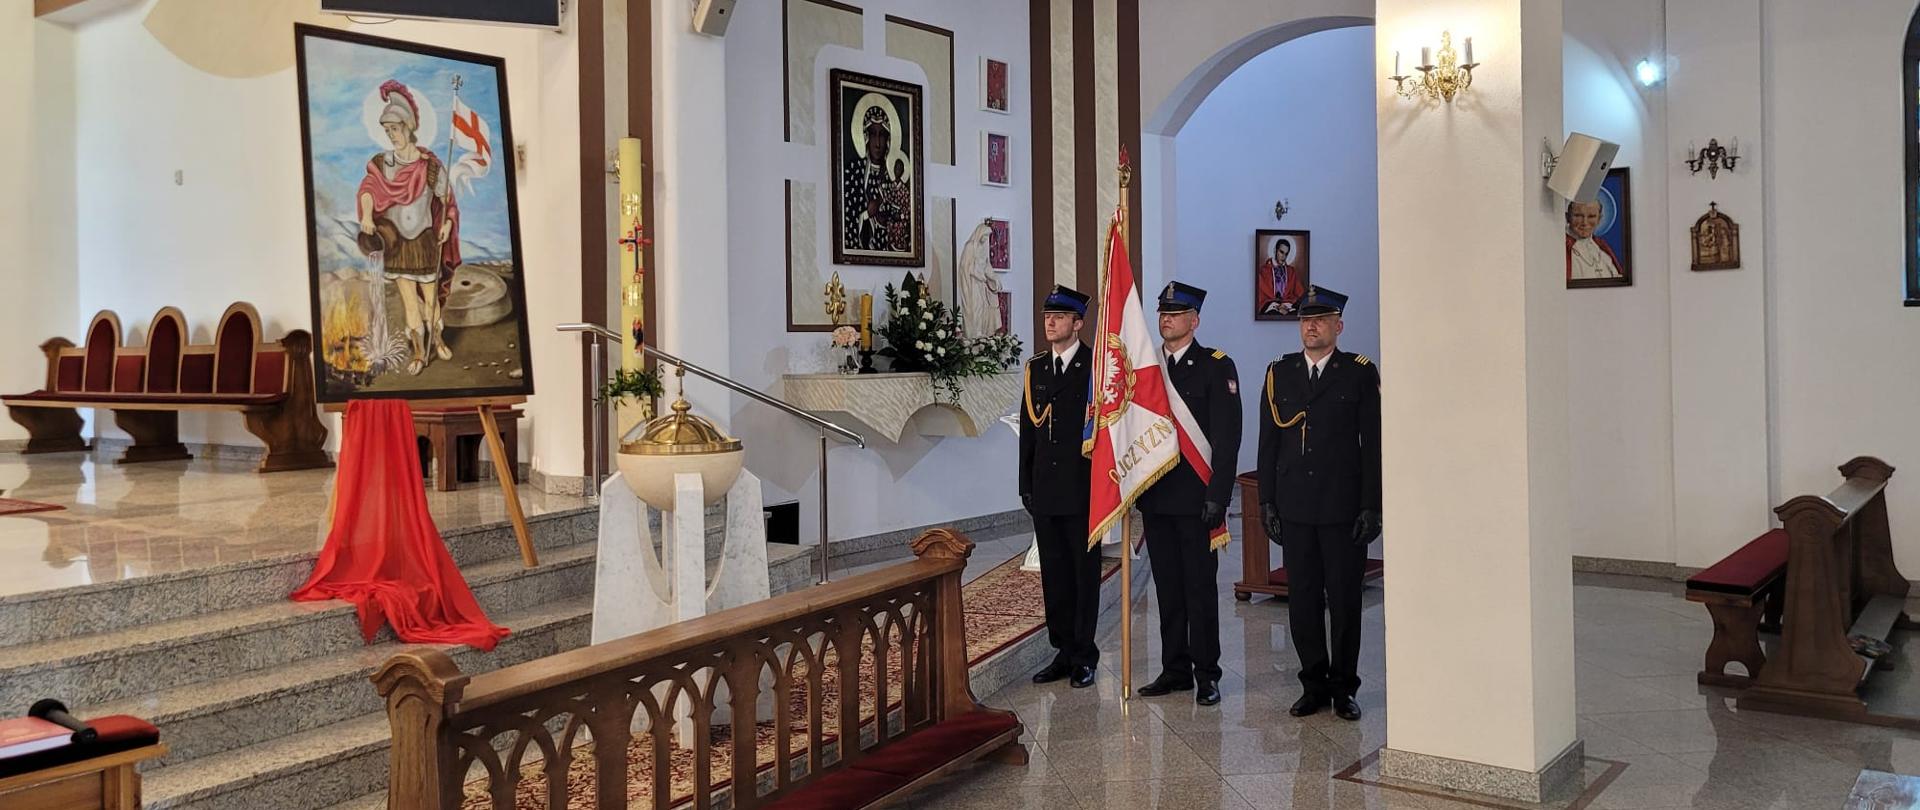 Poczet sztandarowy PSP w kościele pw. św. Judy Tadeusza w Starachowicach , 3 strażaków ze sztandarem psp